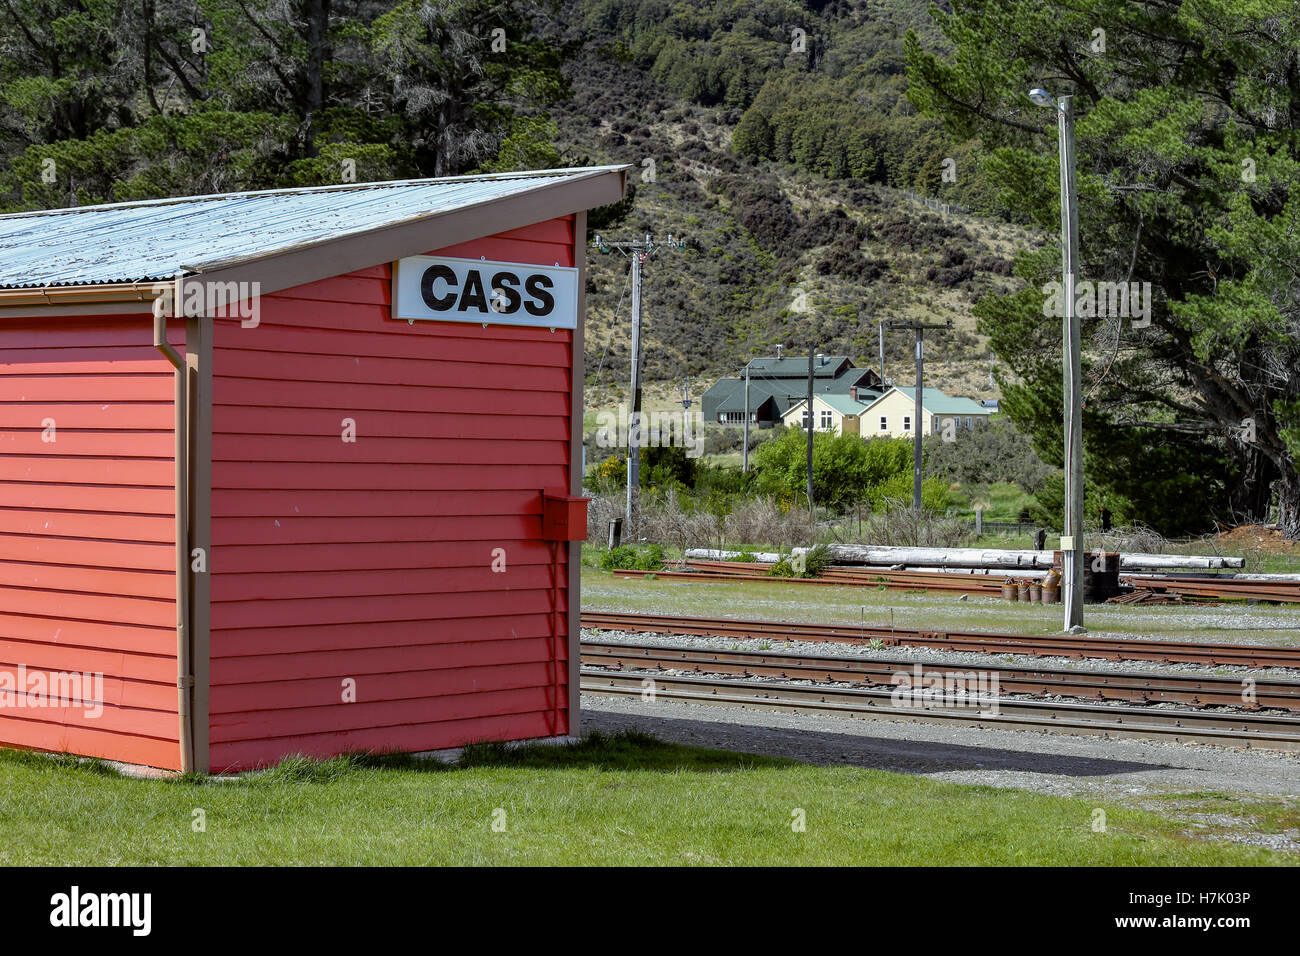 La petite halte ferroviaire à Cass, Nouvelle-Zélande. Derrière la gare, l'Université de Canterbury Station est visible. Banque D'Images